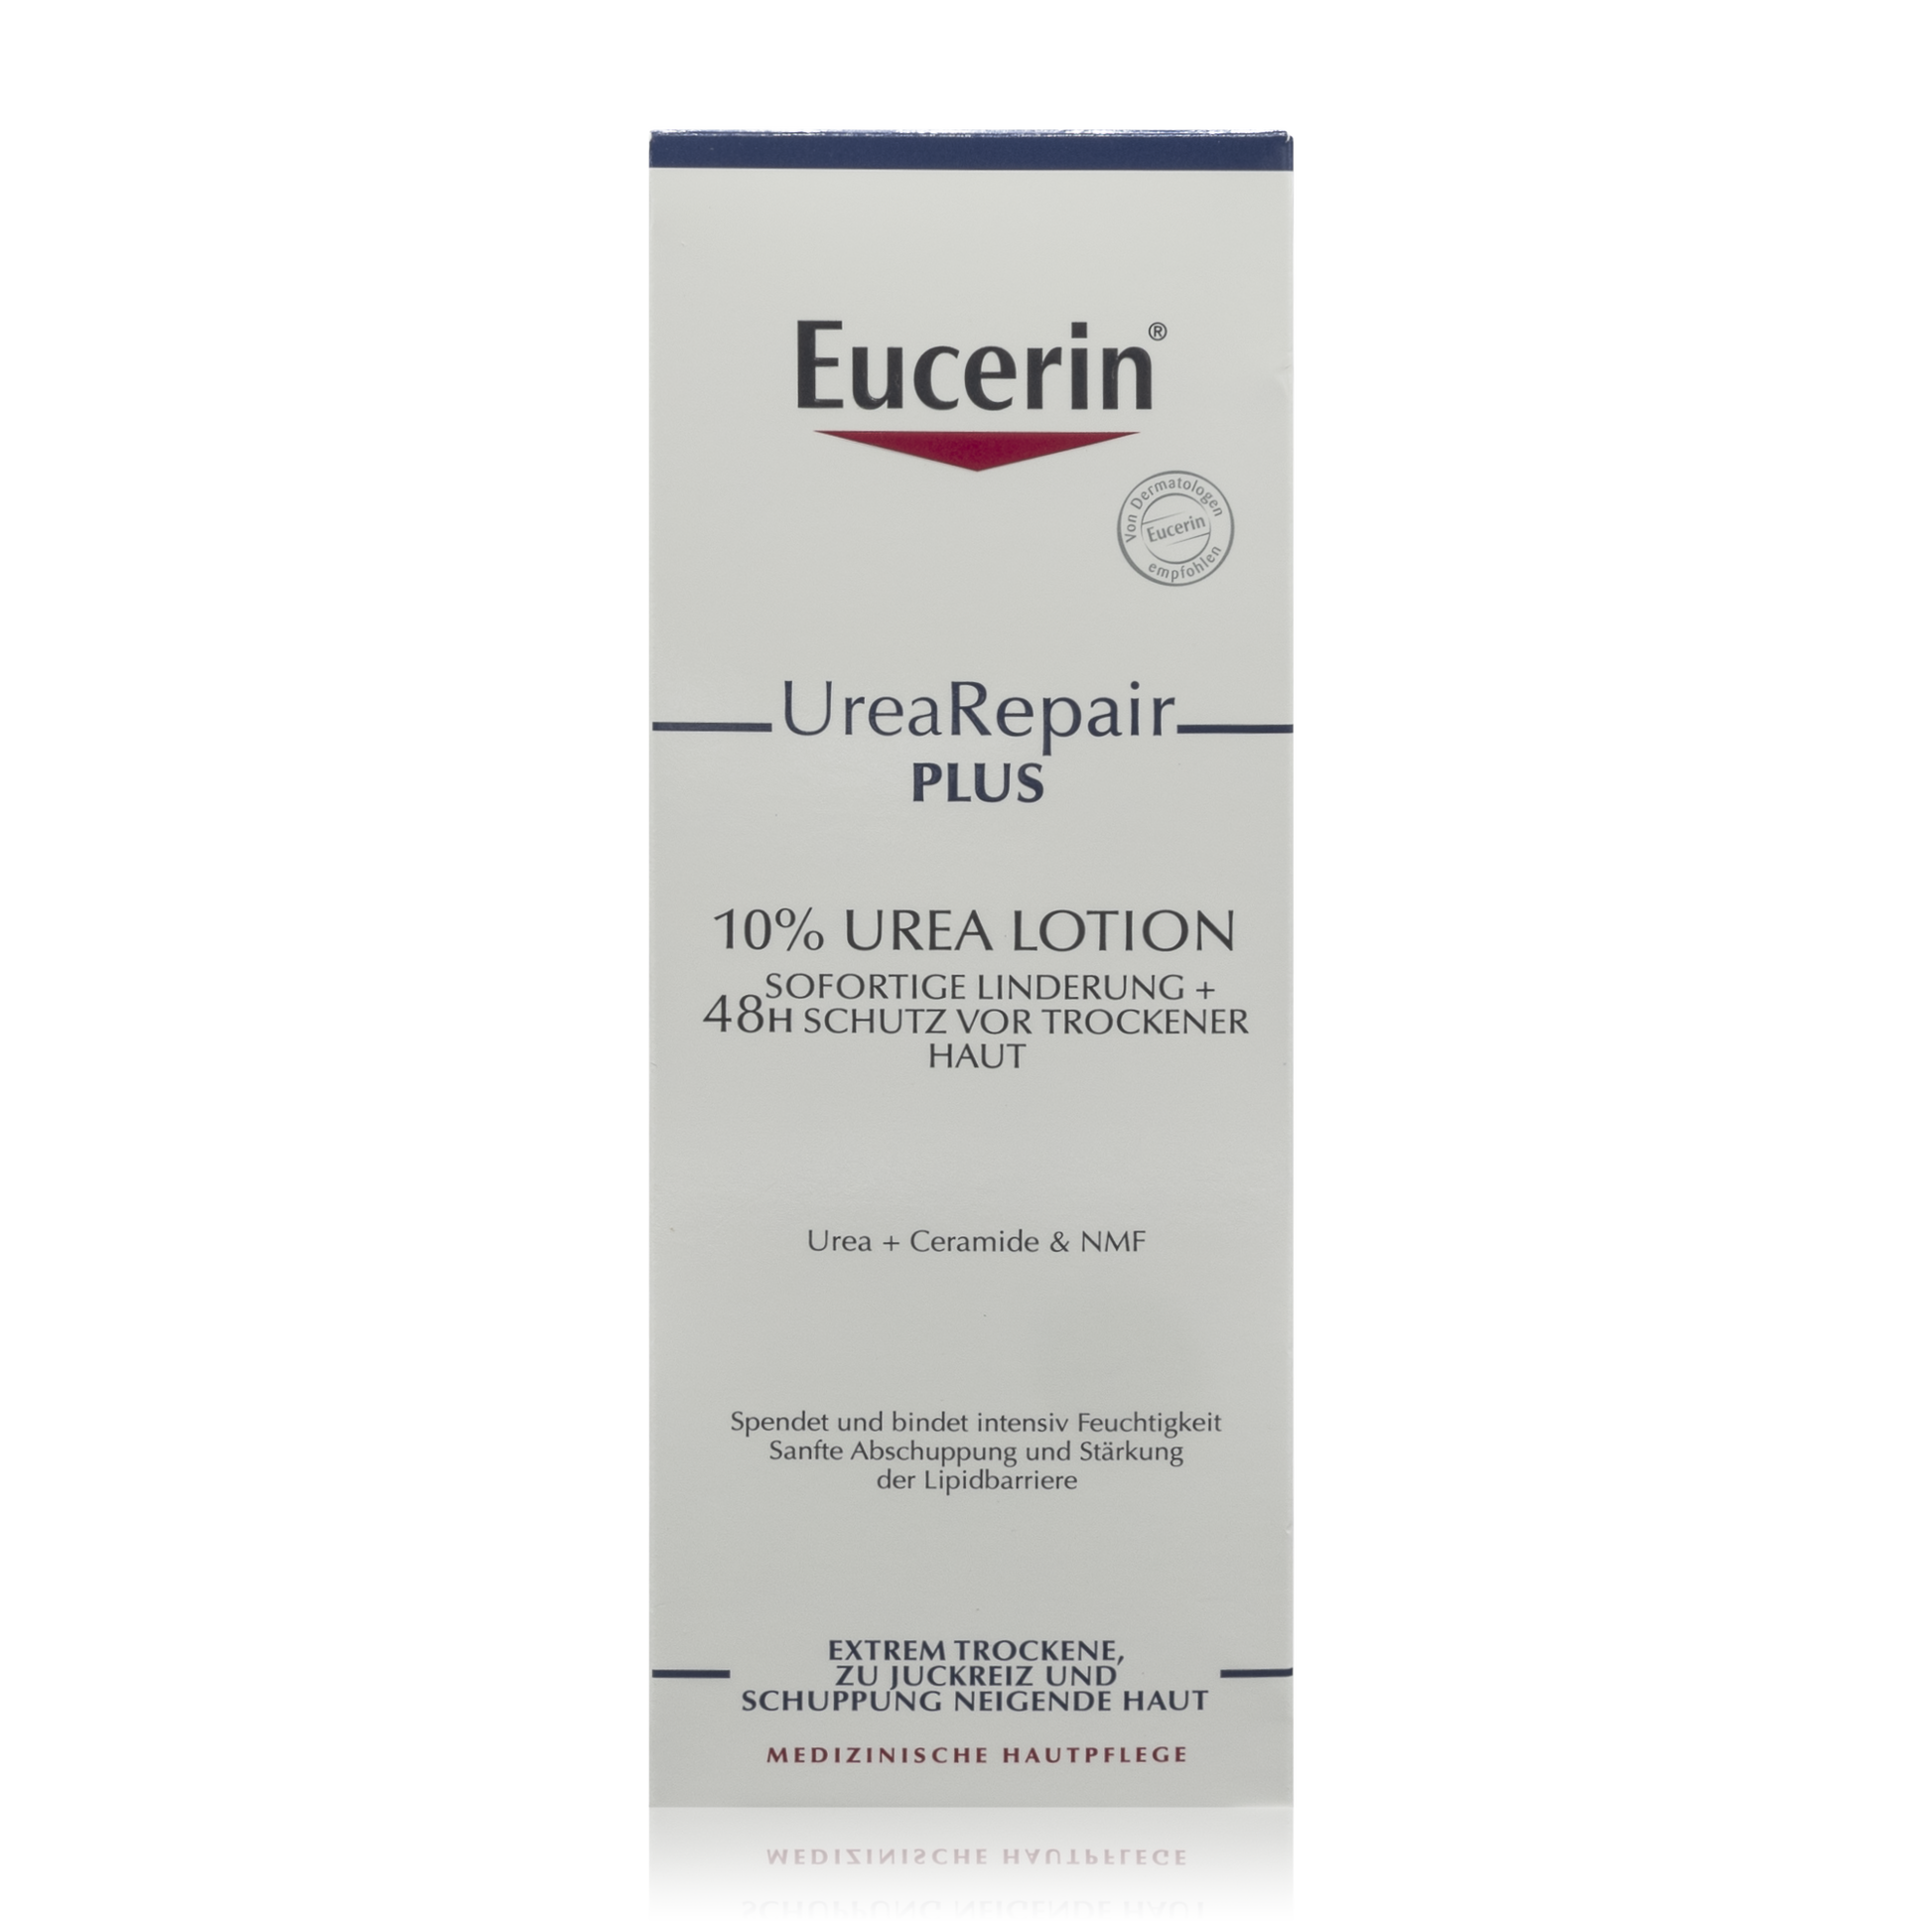 Eucerin Urea 10% Repair Plus Lotion - Spendet intensiv Feuchtigkeit (250ml) - PZN: 11678142 - RoTe Place